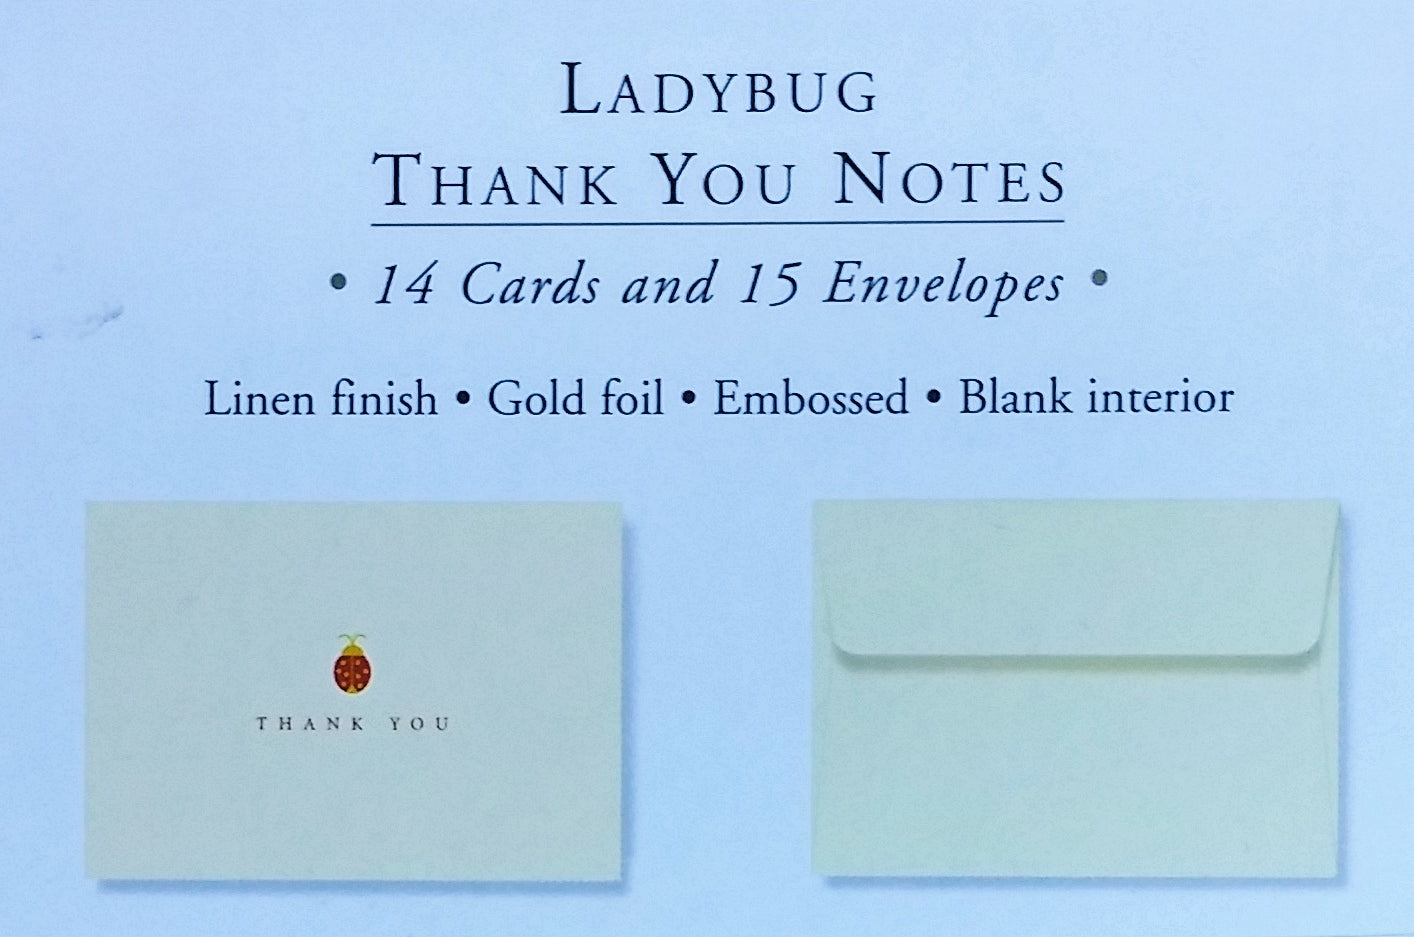 Thank You Notes | LADYBUG #591885-2